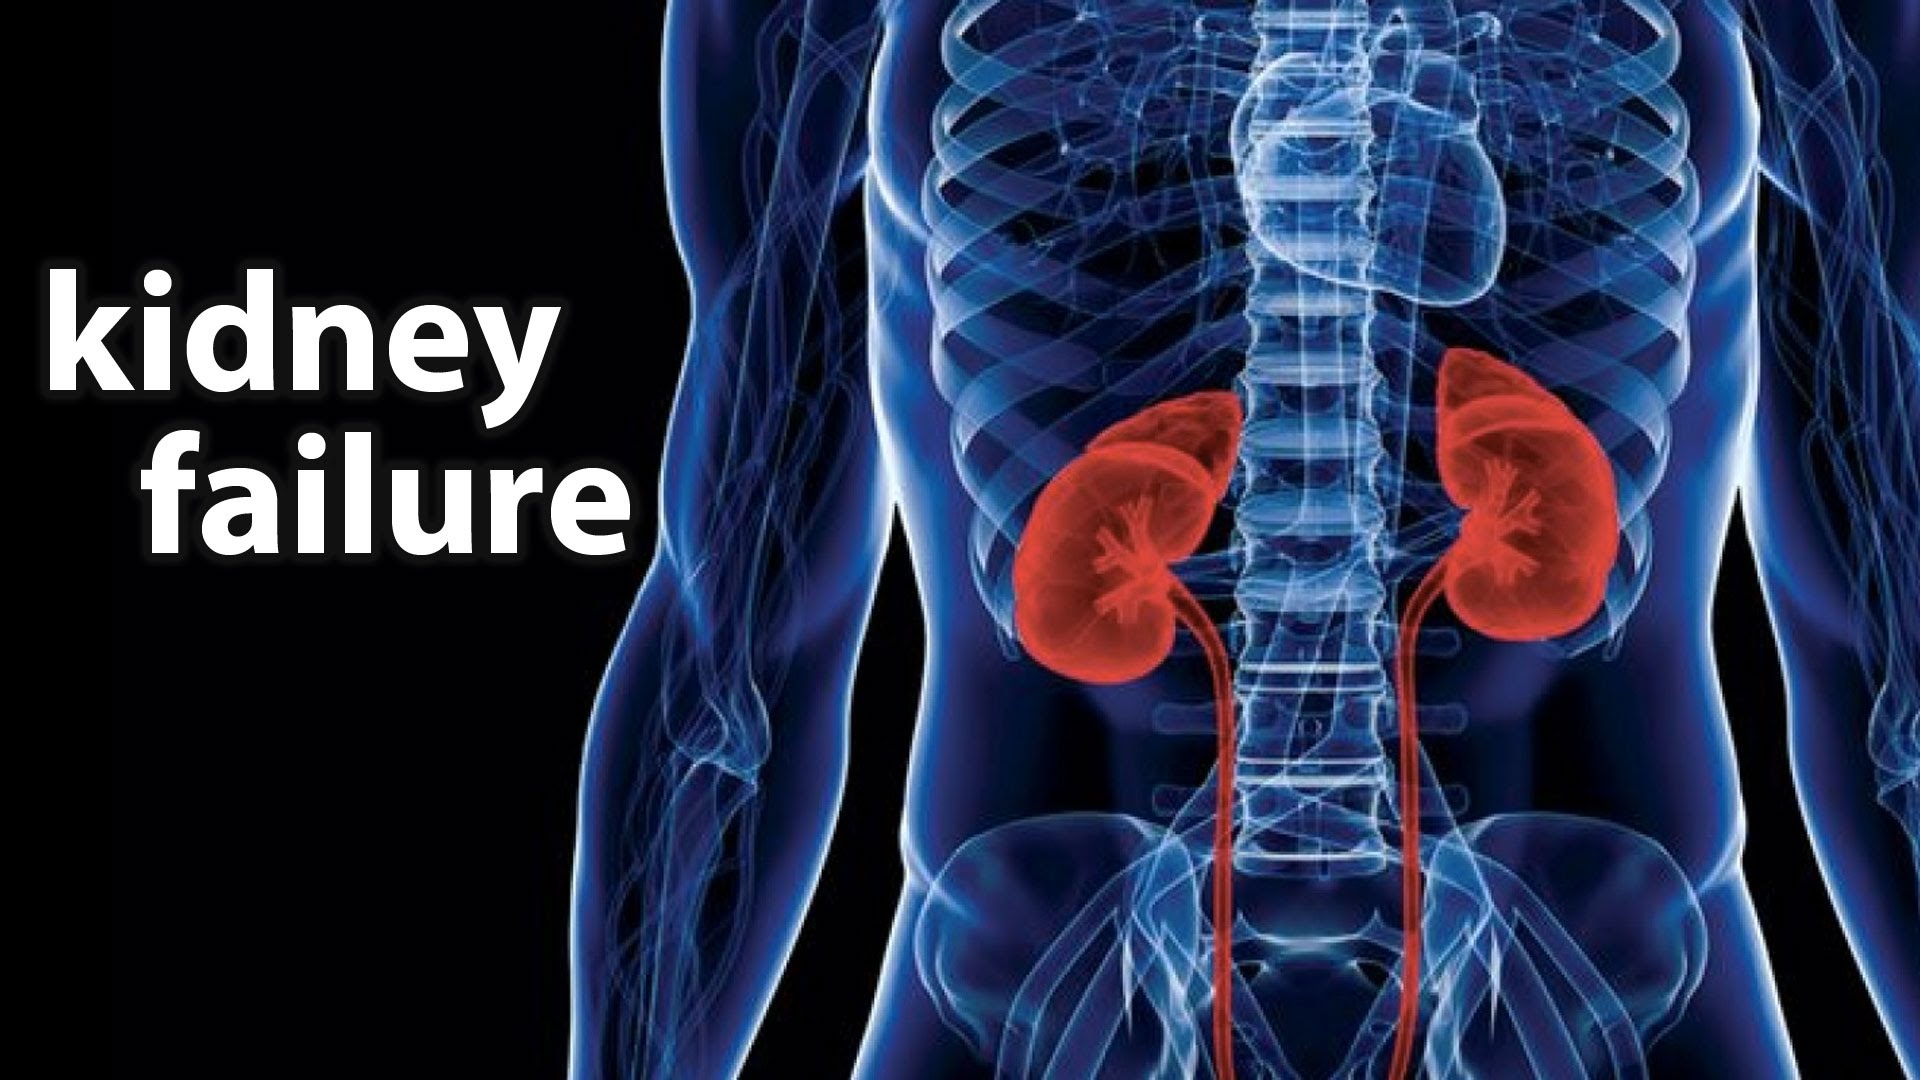 Types of Kidney Failure